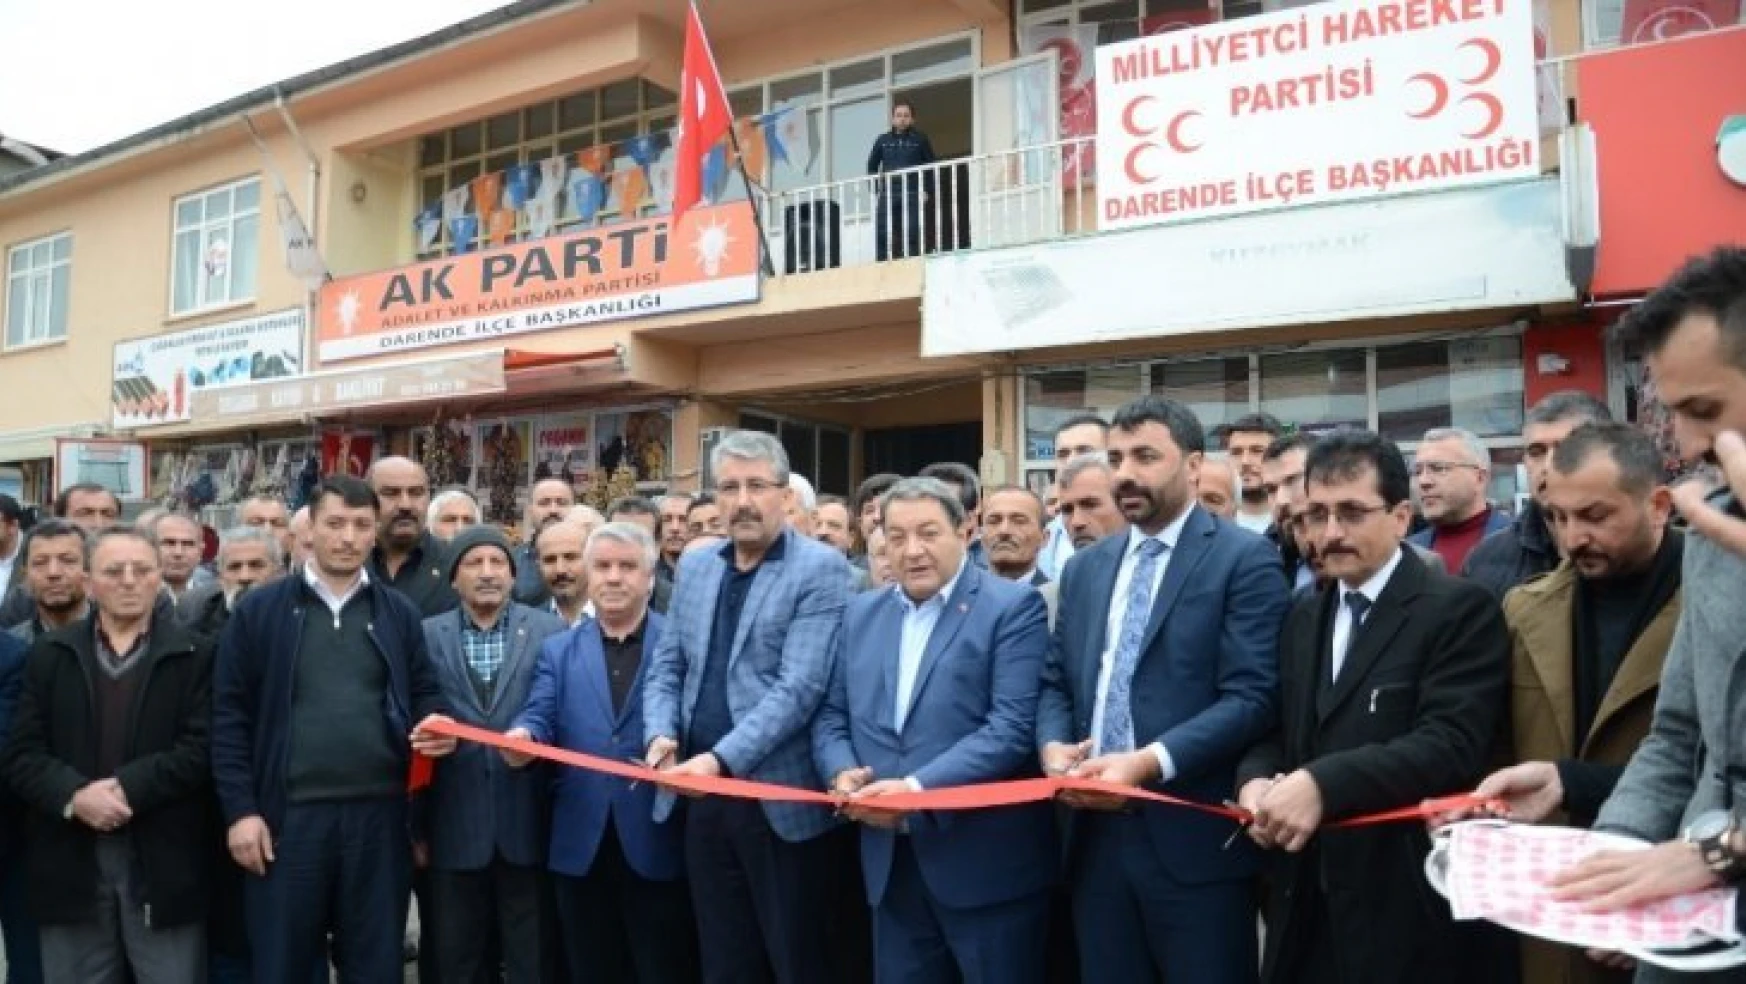 Milletvekili Fendoğlu, Darende'de ilçe binasının açılışına katıldı